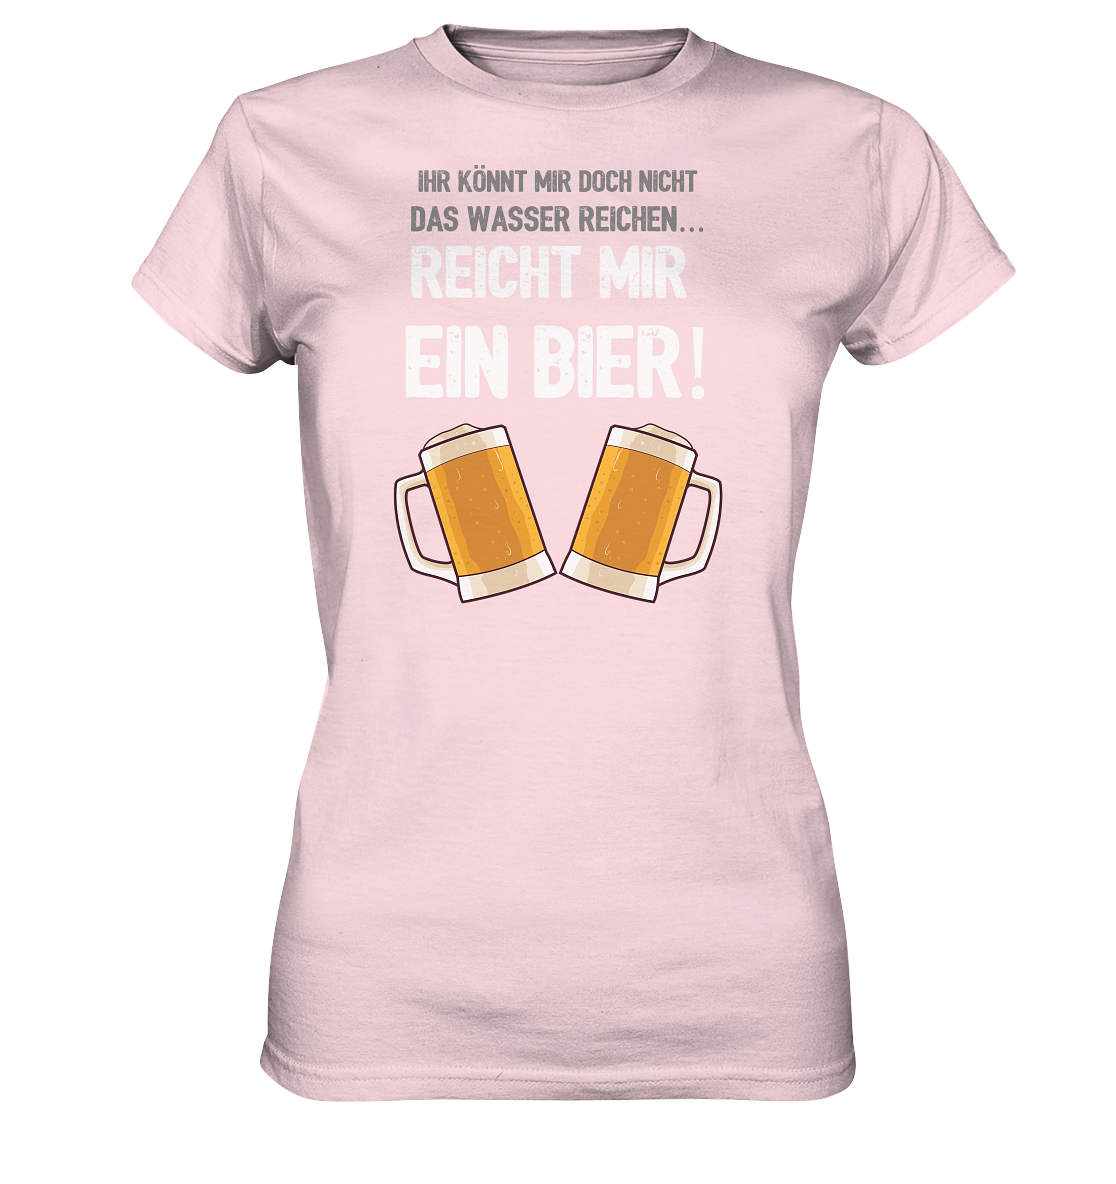 Reicht mir ein Bier - Geile Sprüche, Geile Designs - Ladies Premium Shirt